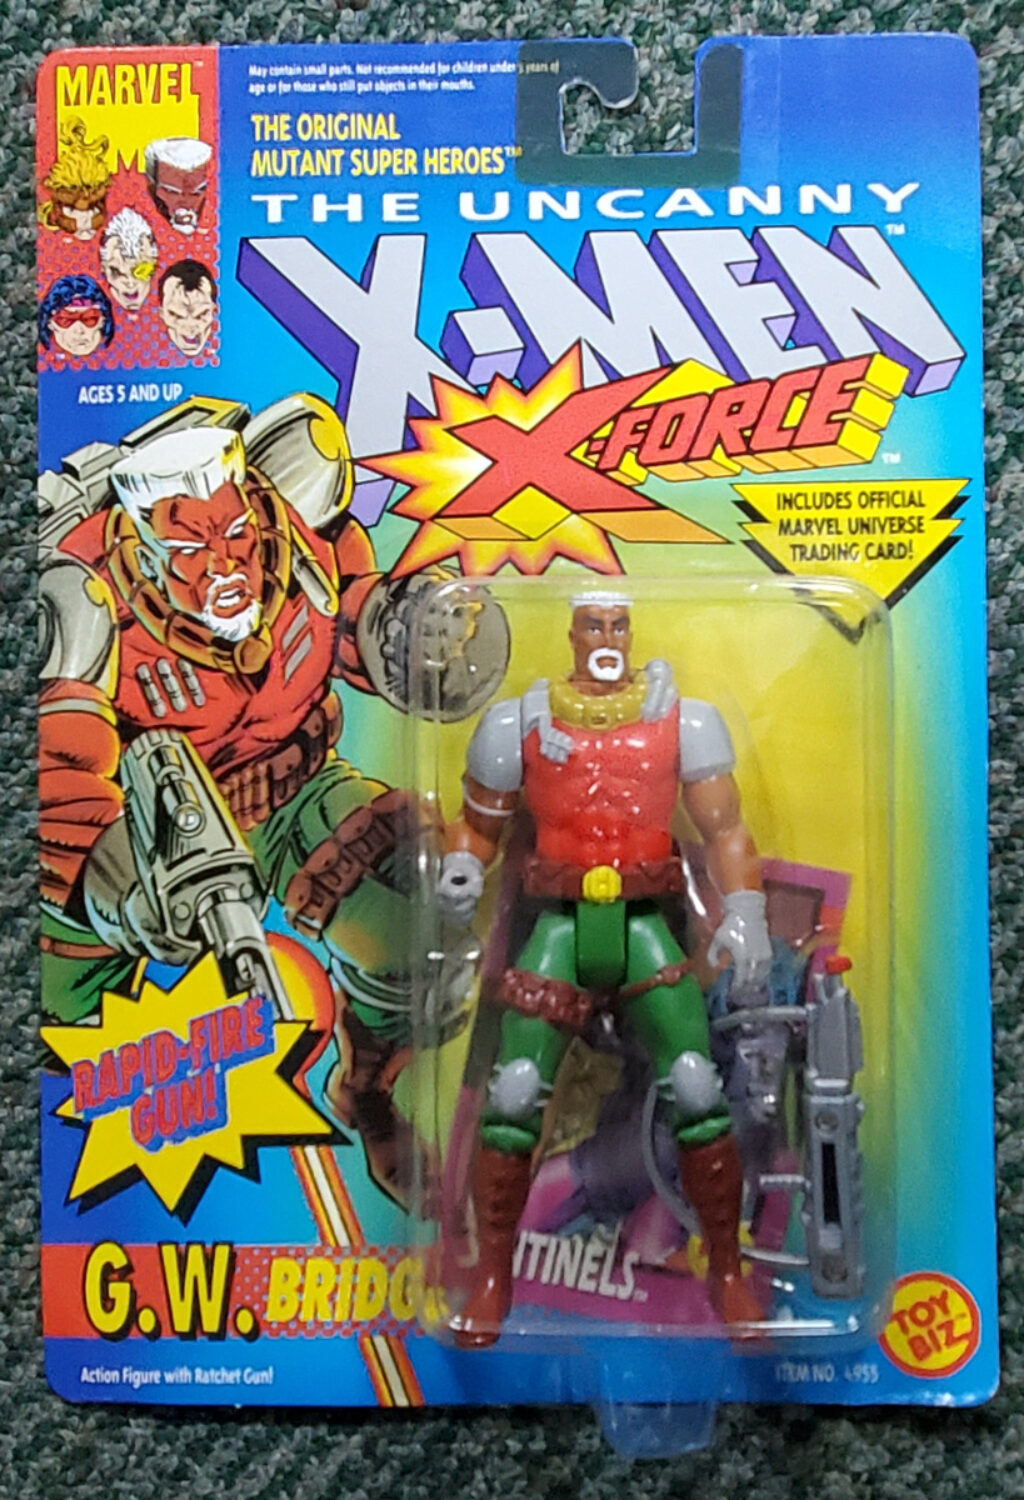 Toy Biz Uncanny X-Men X-Force G.W. Bridge Action Figure: Mint on Card 1